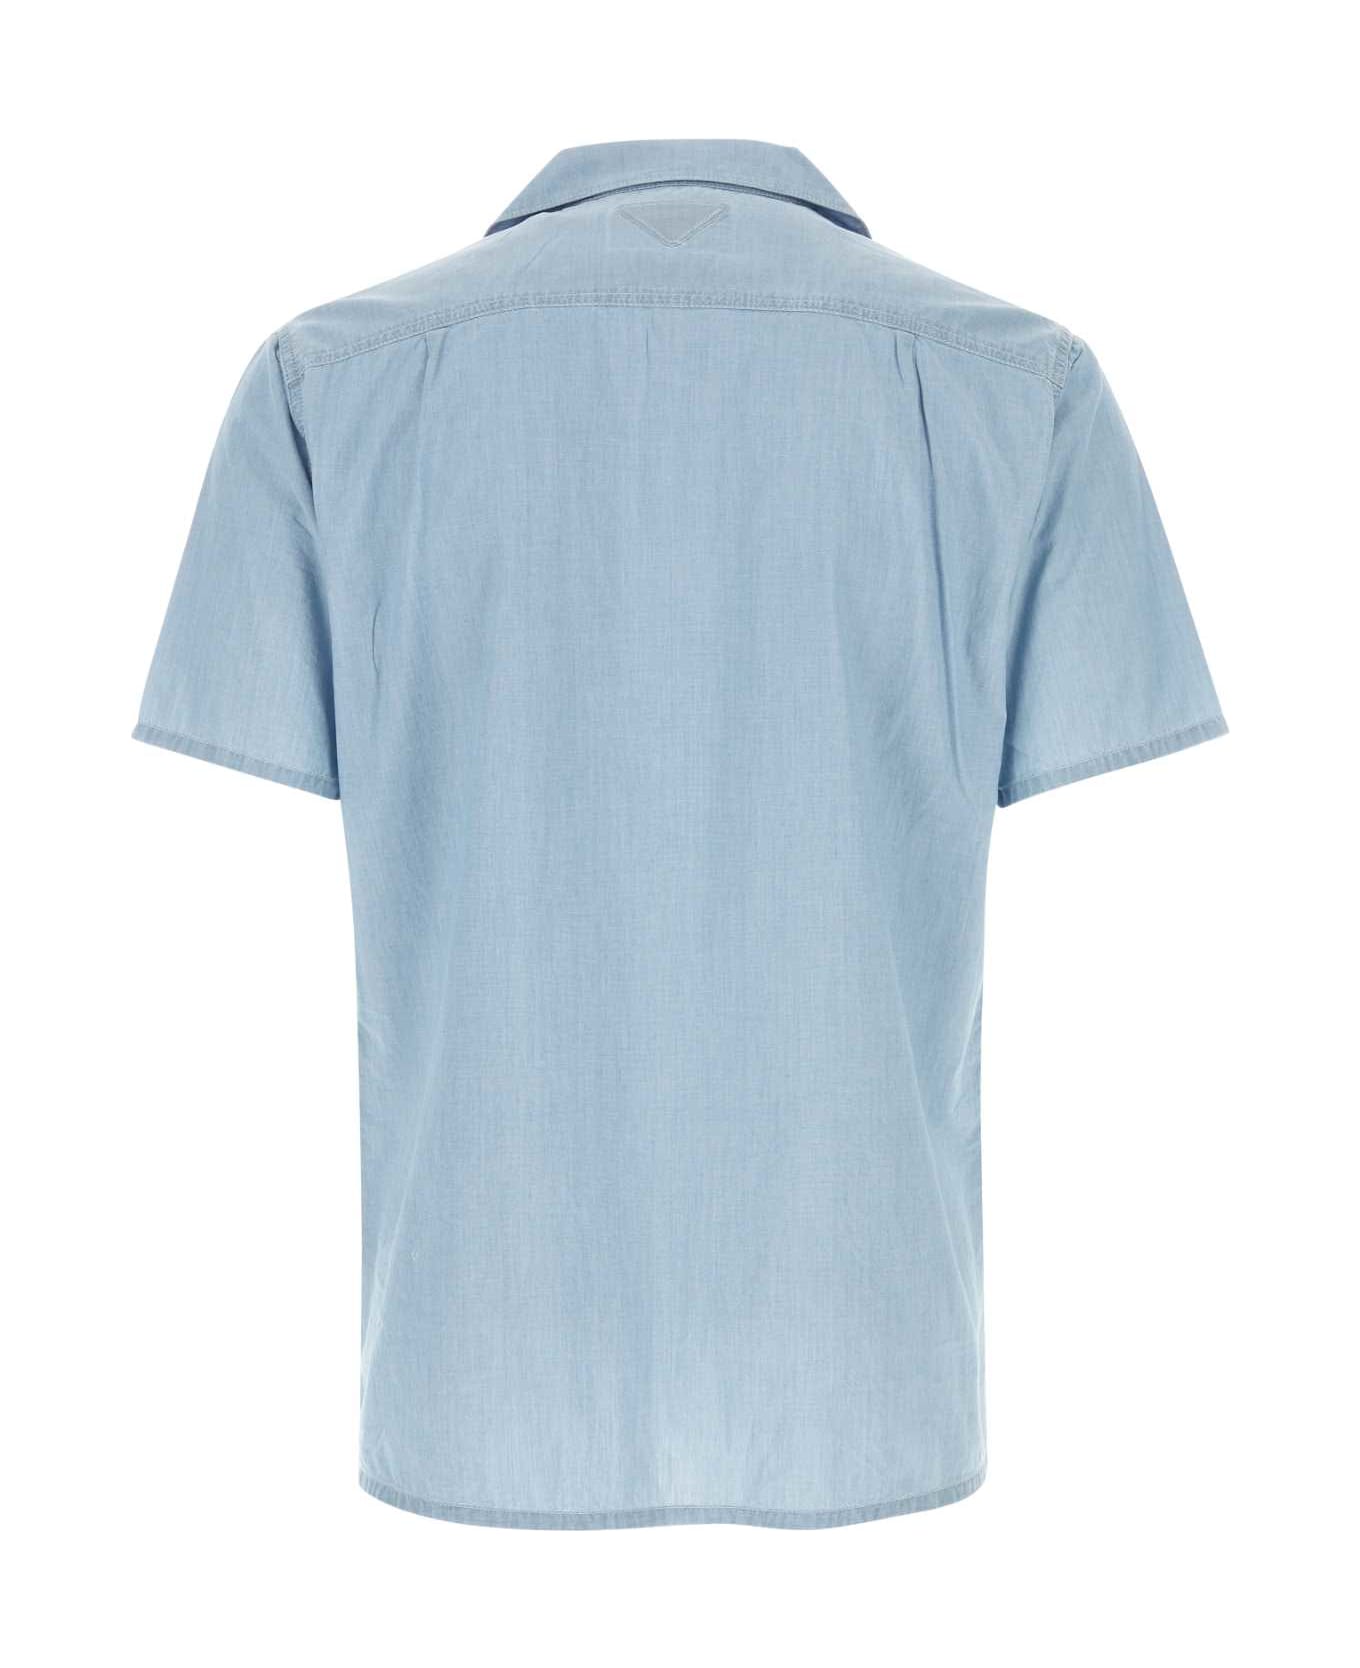 Prada Light-blue Cotton Shirt - SKY